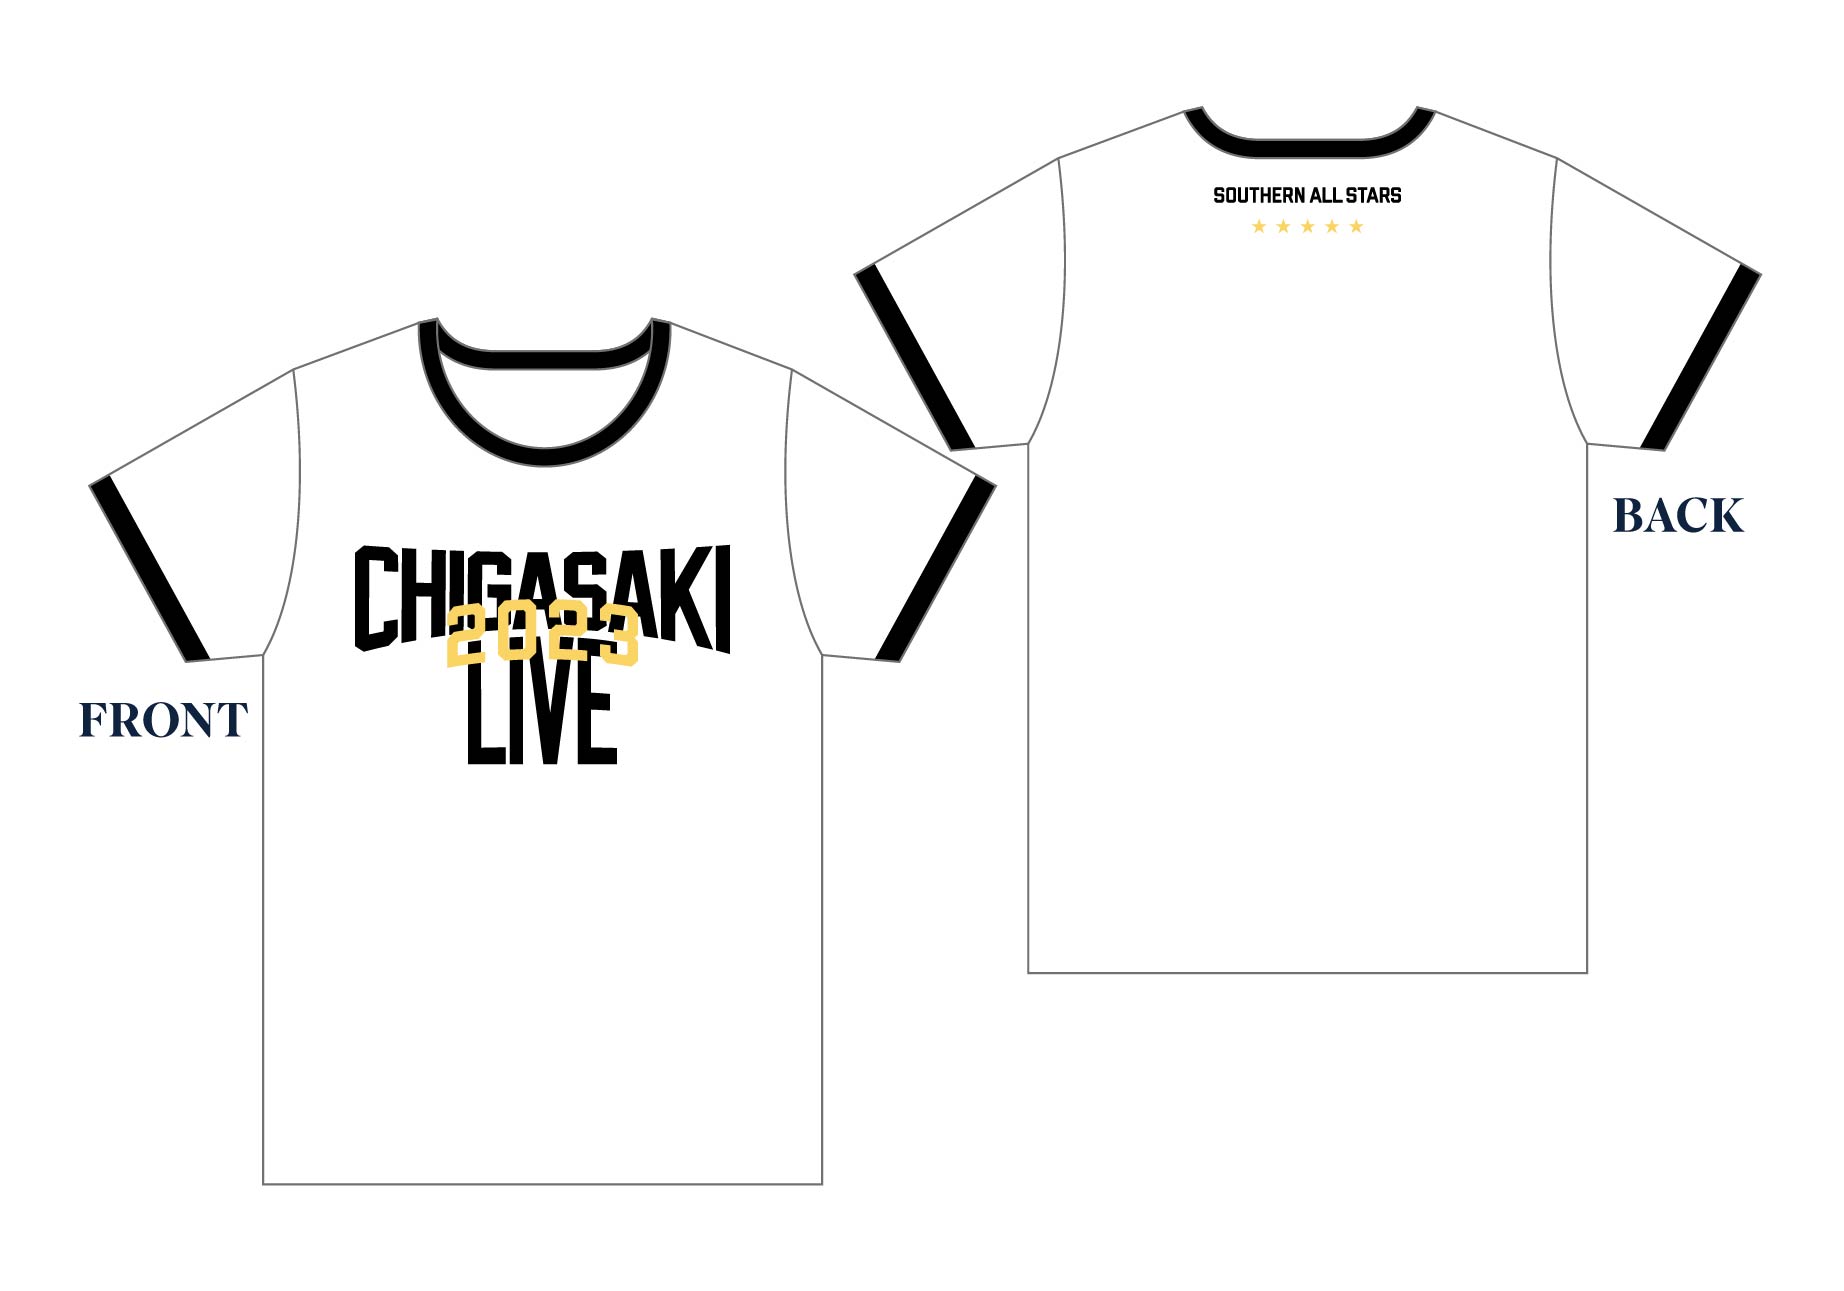 CHIGASAKI LIVE Tシャツ
【サイズ：S/M/L/XL】
※サイズを選んでお買い求めいただけます。